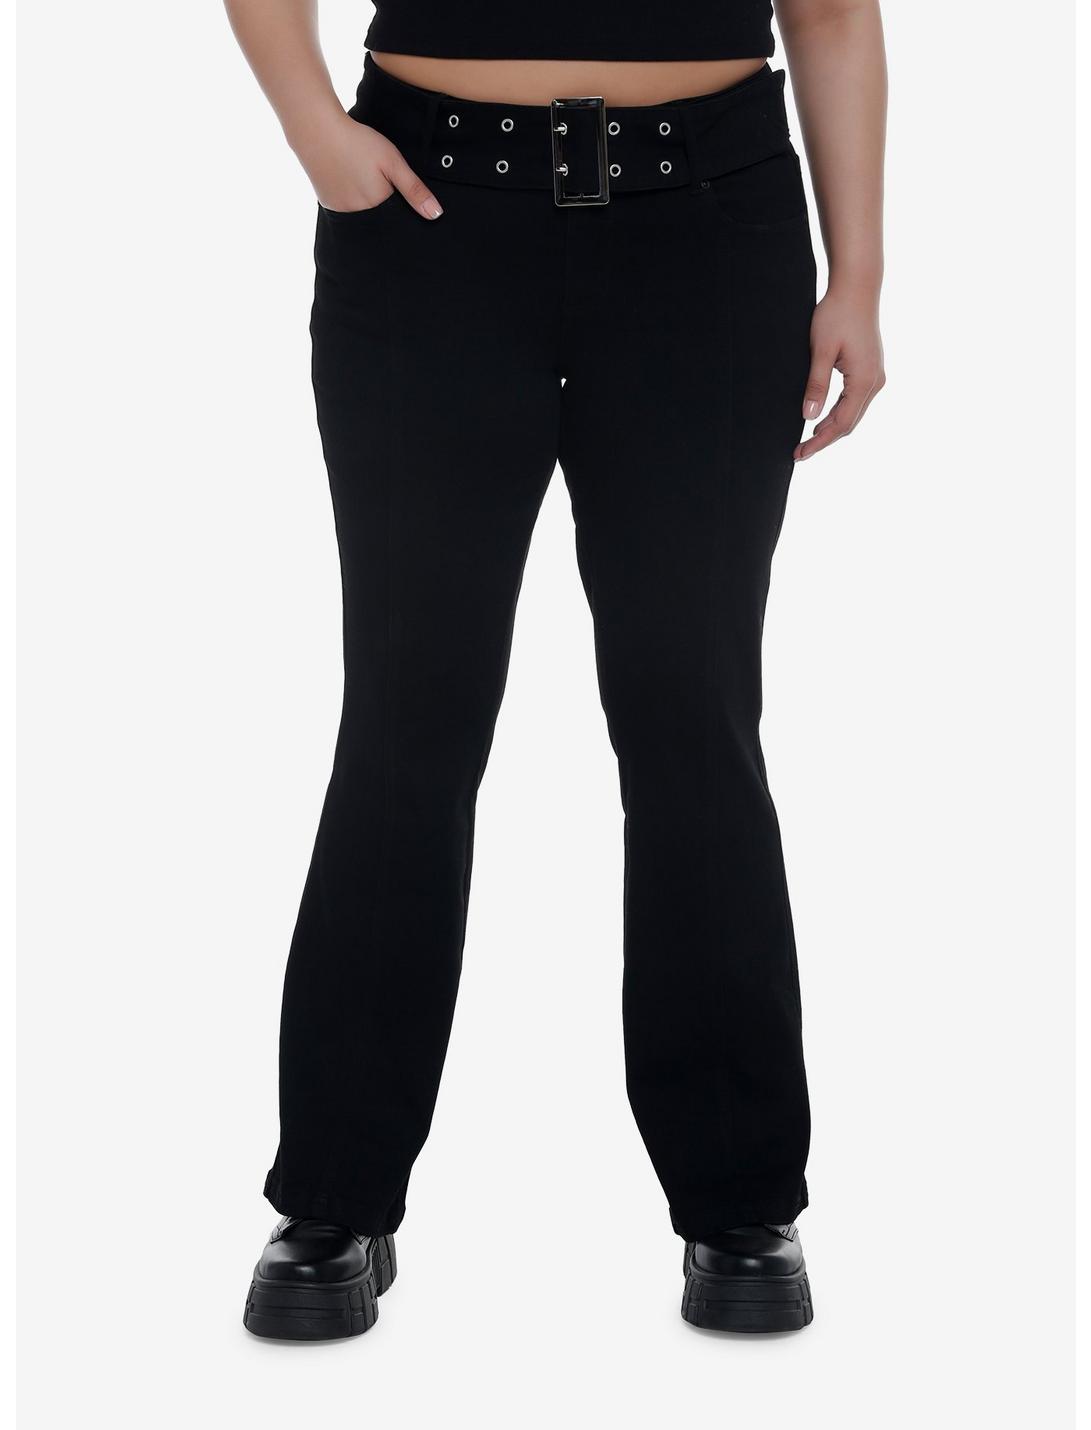 Black Low Rise Flare Denim Pants Plus Size